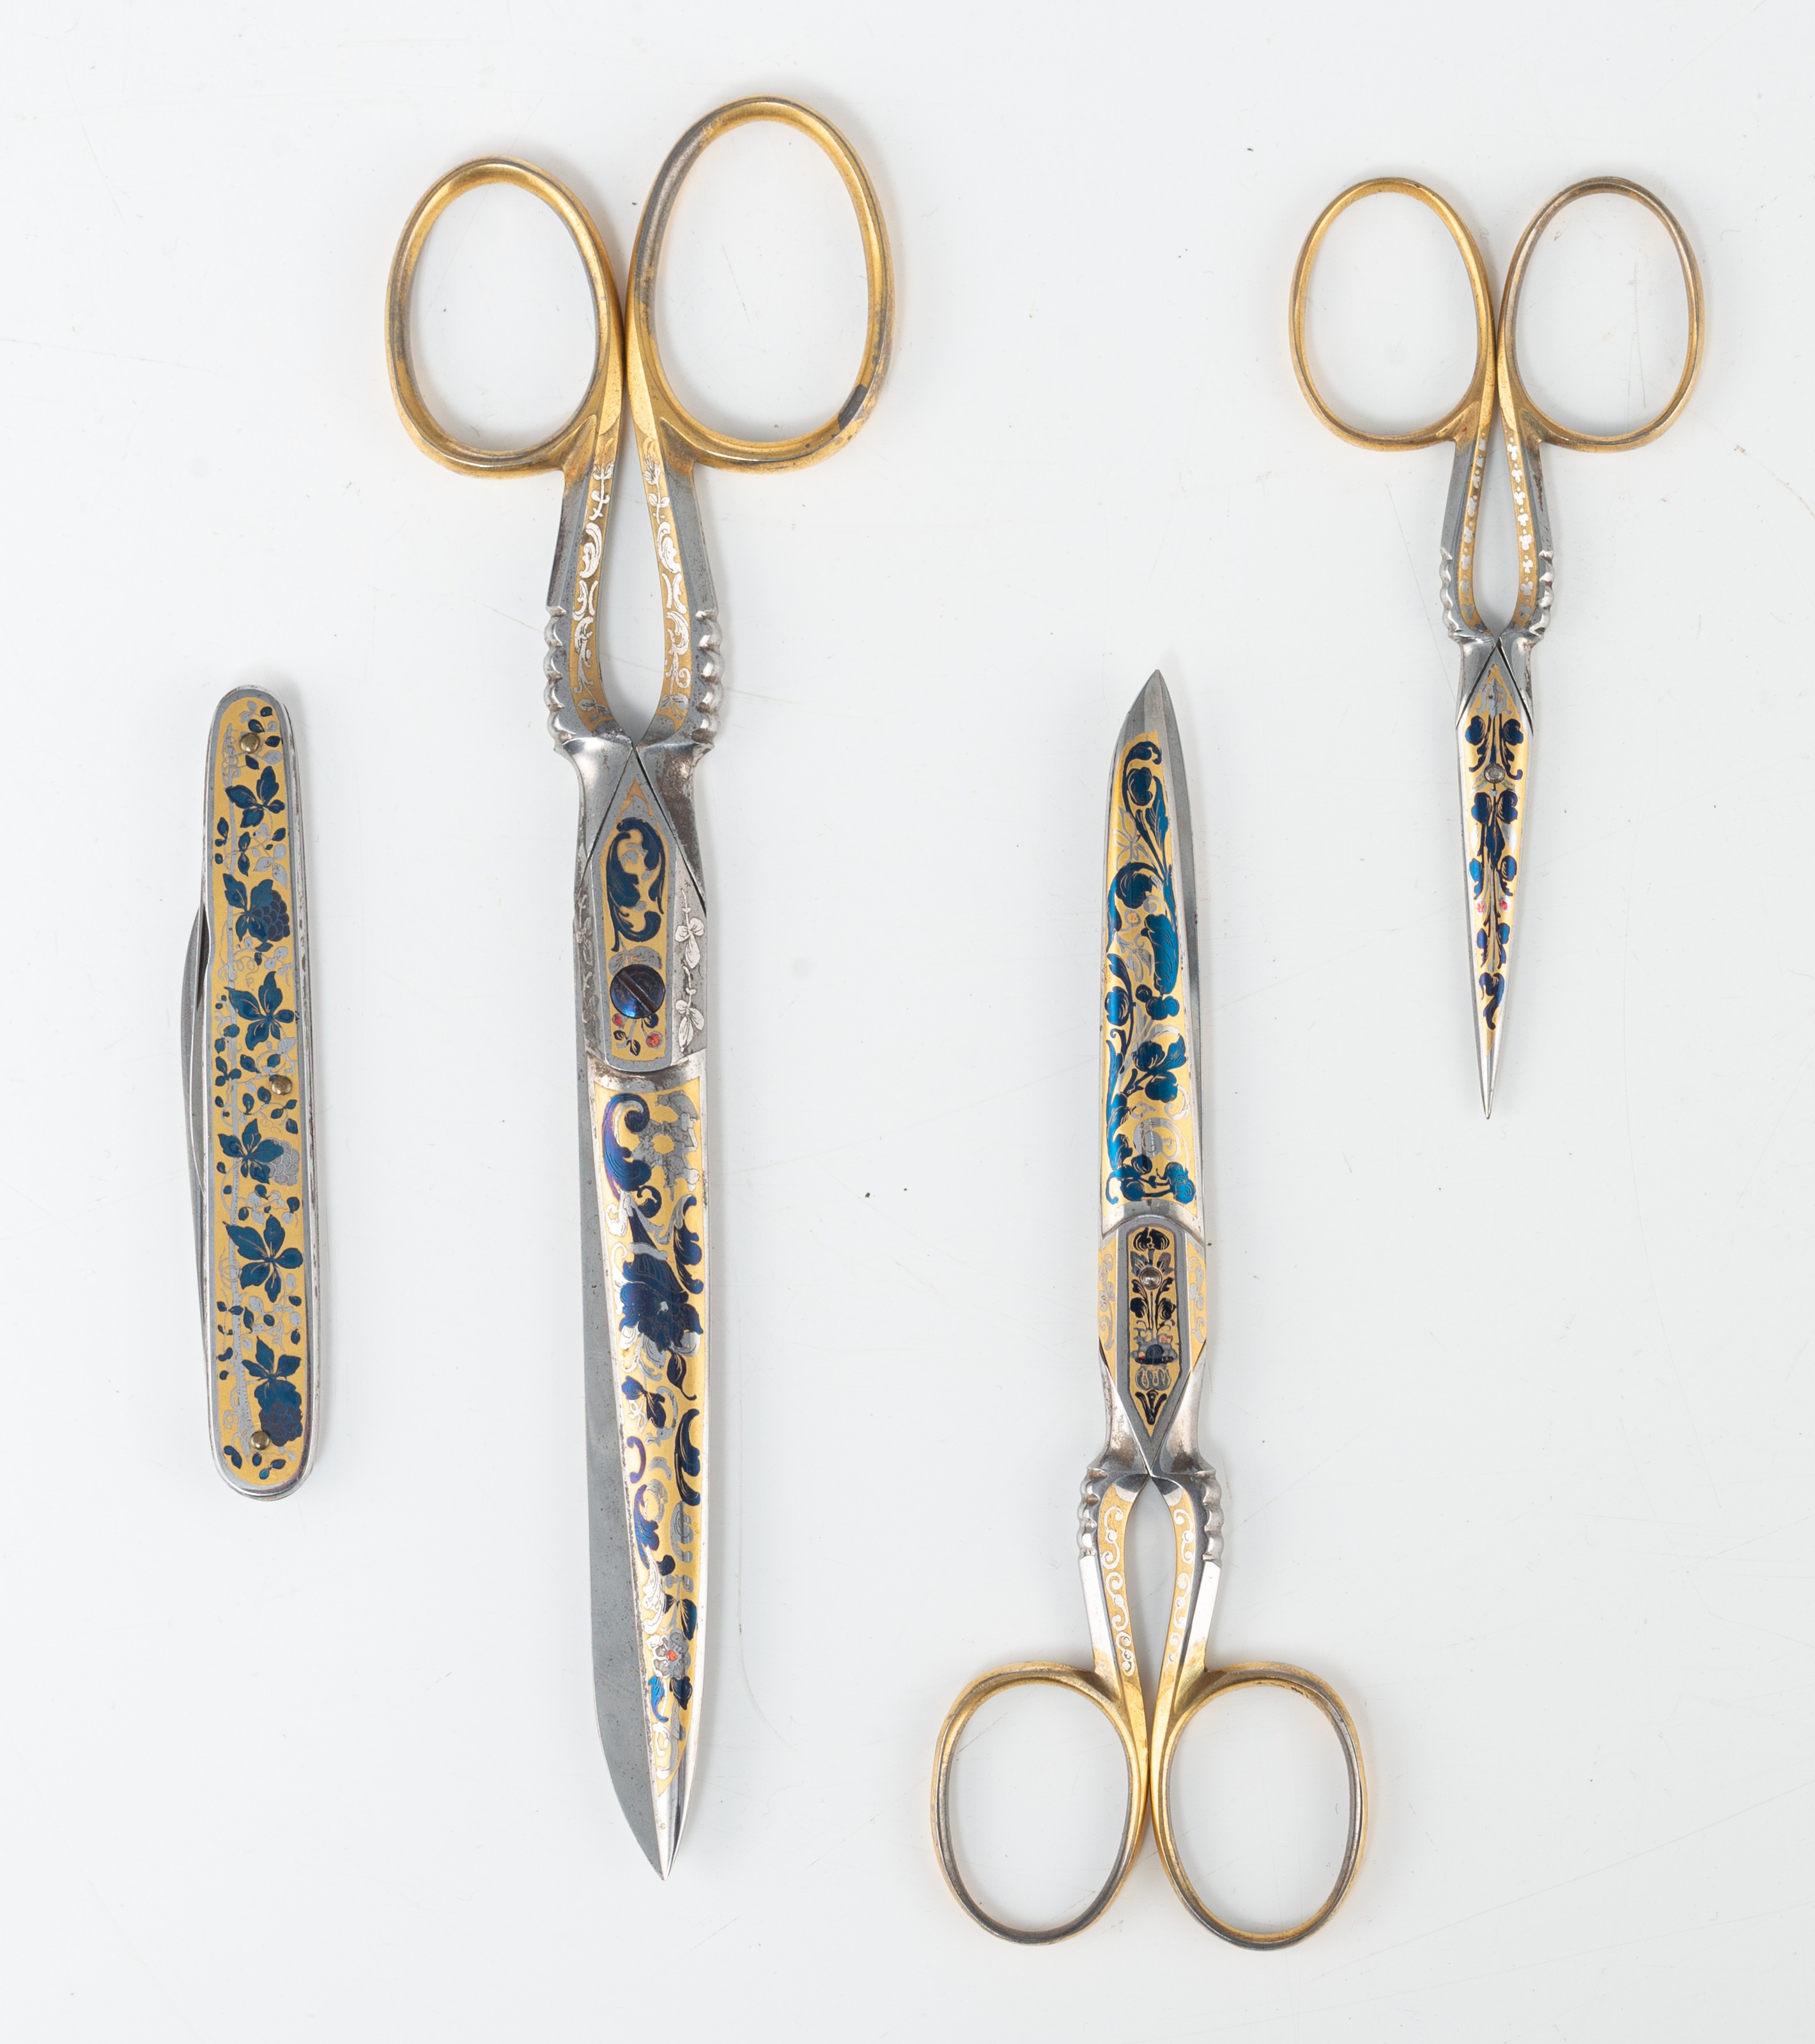 A set of floral damascening scissors and pocket knife, by 'Eskilstunamagasinet, Stockholm' - Image 7 of 9